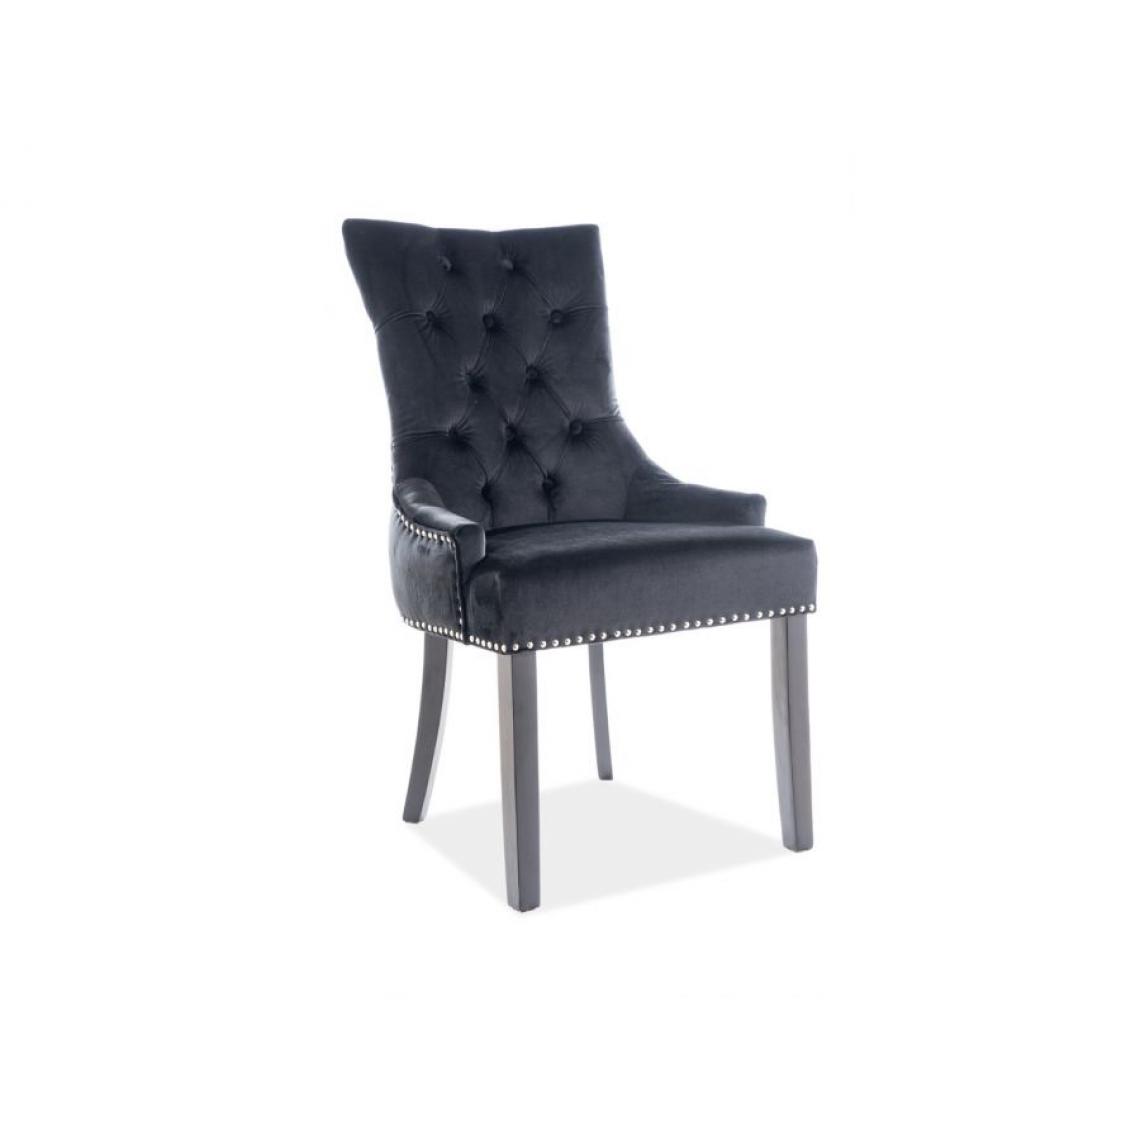 Hucoco - EDWARG | Chaise élégante rembourrée | Dimensions 99x55x45 cm | Rembourrage en velours | Bords décorés | Style glamour - Noir - Chaises